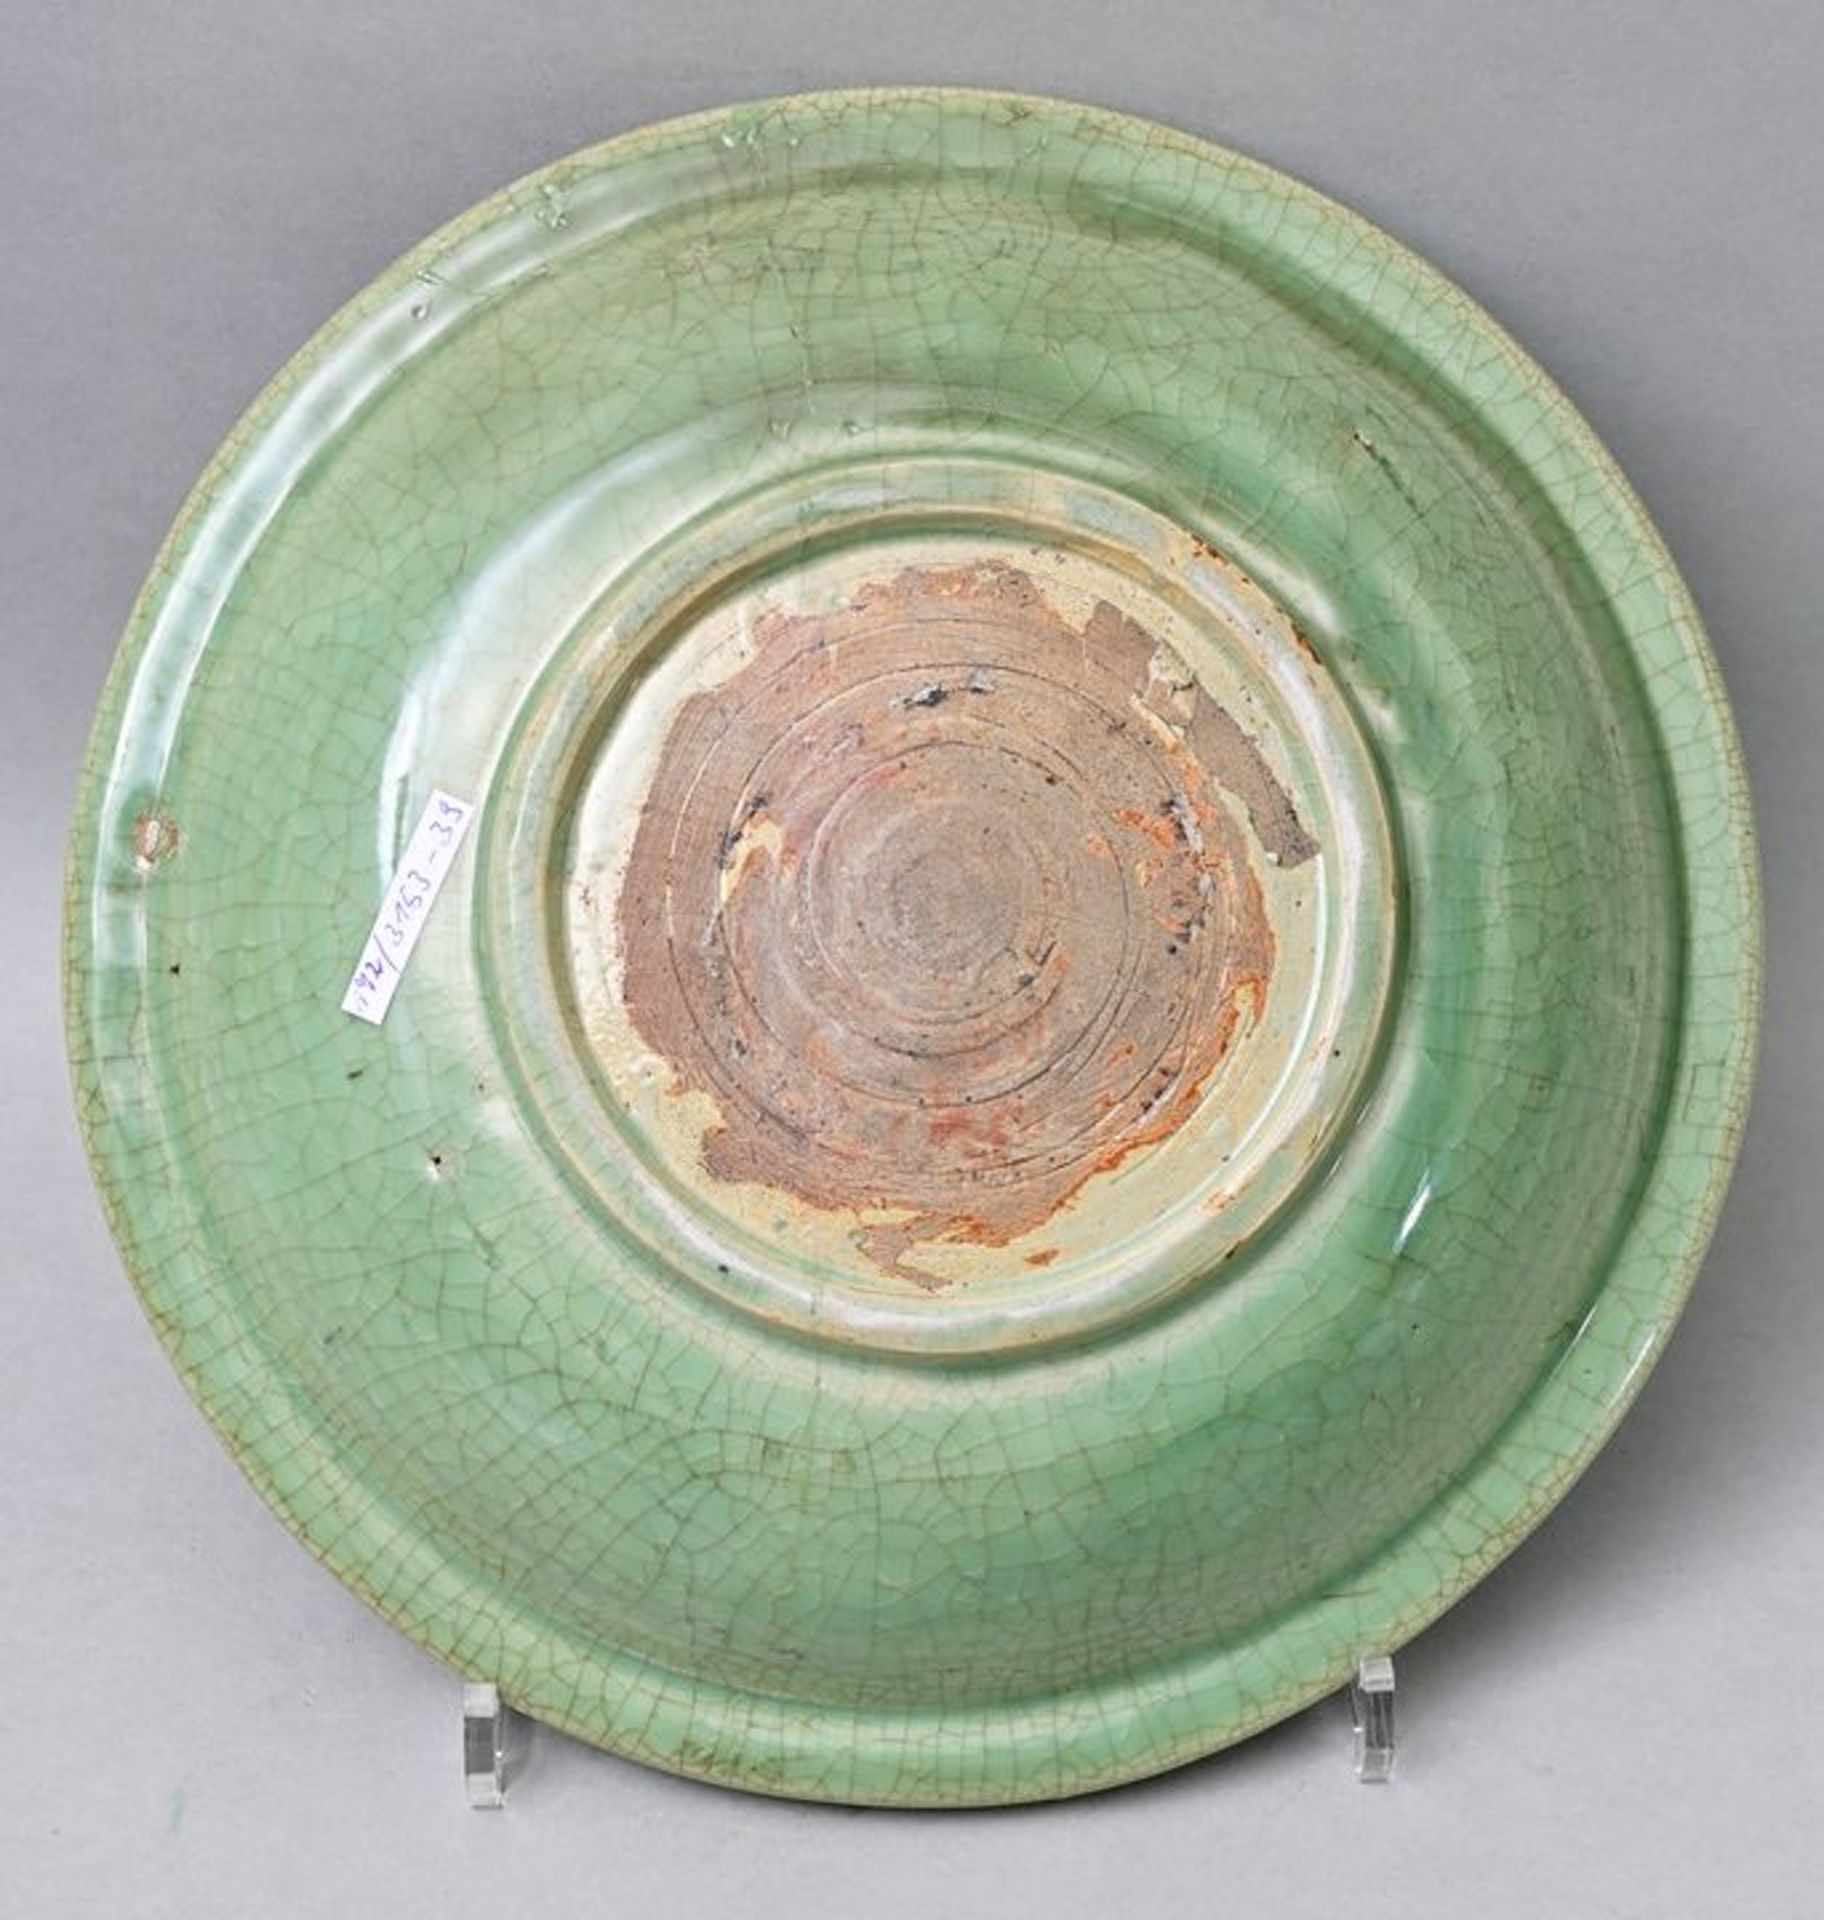 Platte grüne Glasur/ greenware plate - Bild 2 aus 4